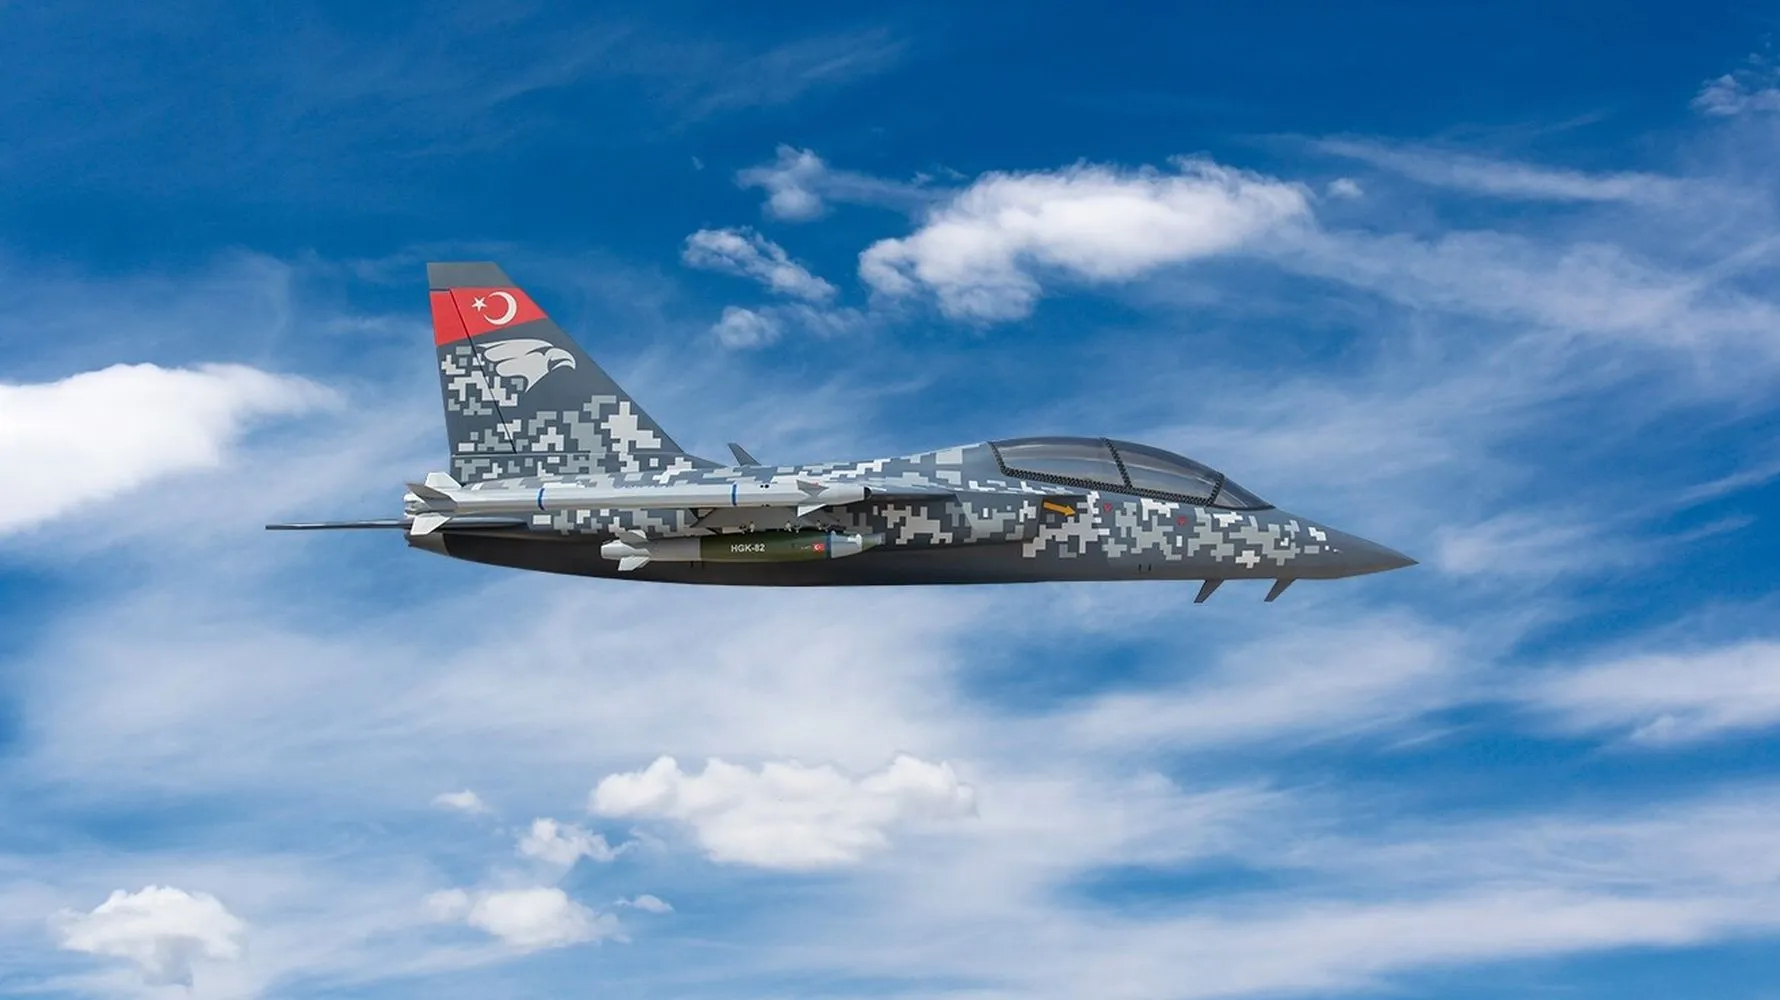 Türkisches leichtes Kampfflugzeug TAI Hürjet verließ zum ersten Mal den Hangar - das Flugzeug wird für die Ausbildung von F-35- und TAI-TF-X-Piloten eingesetzt